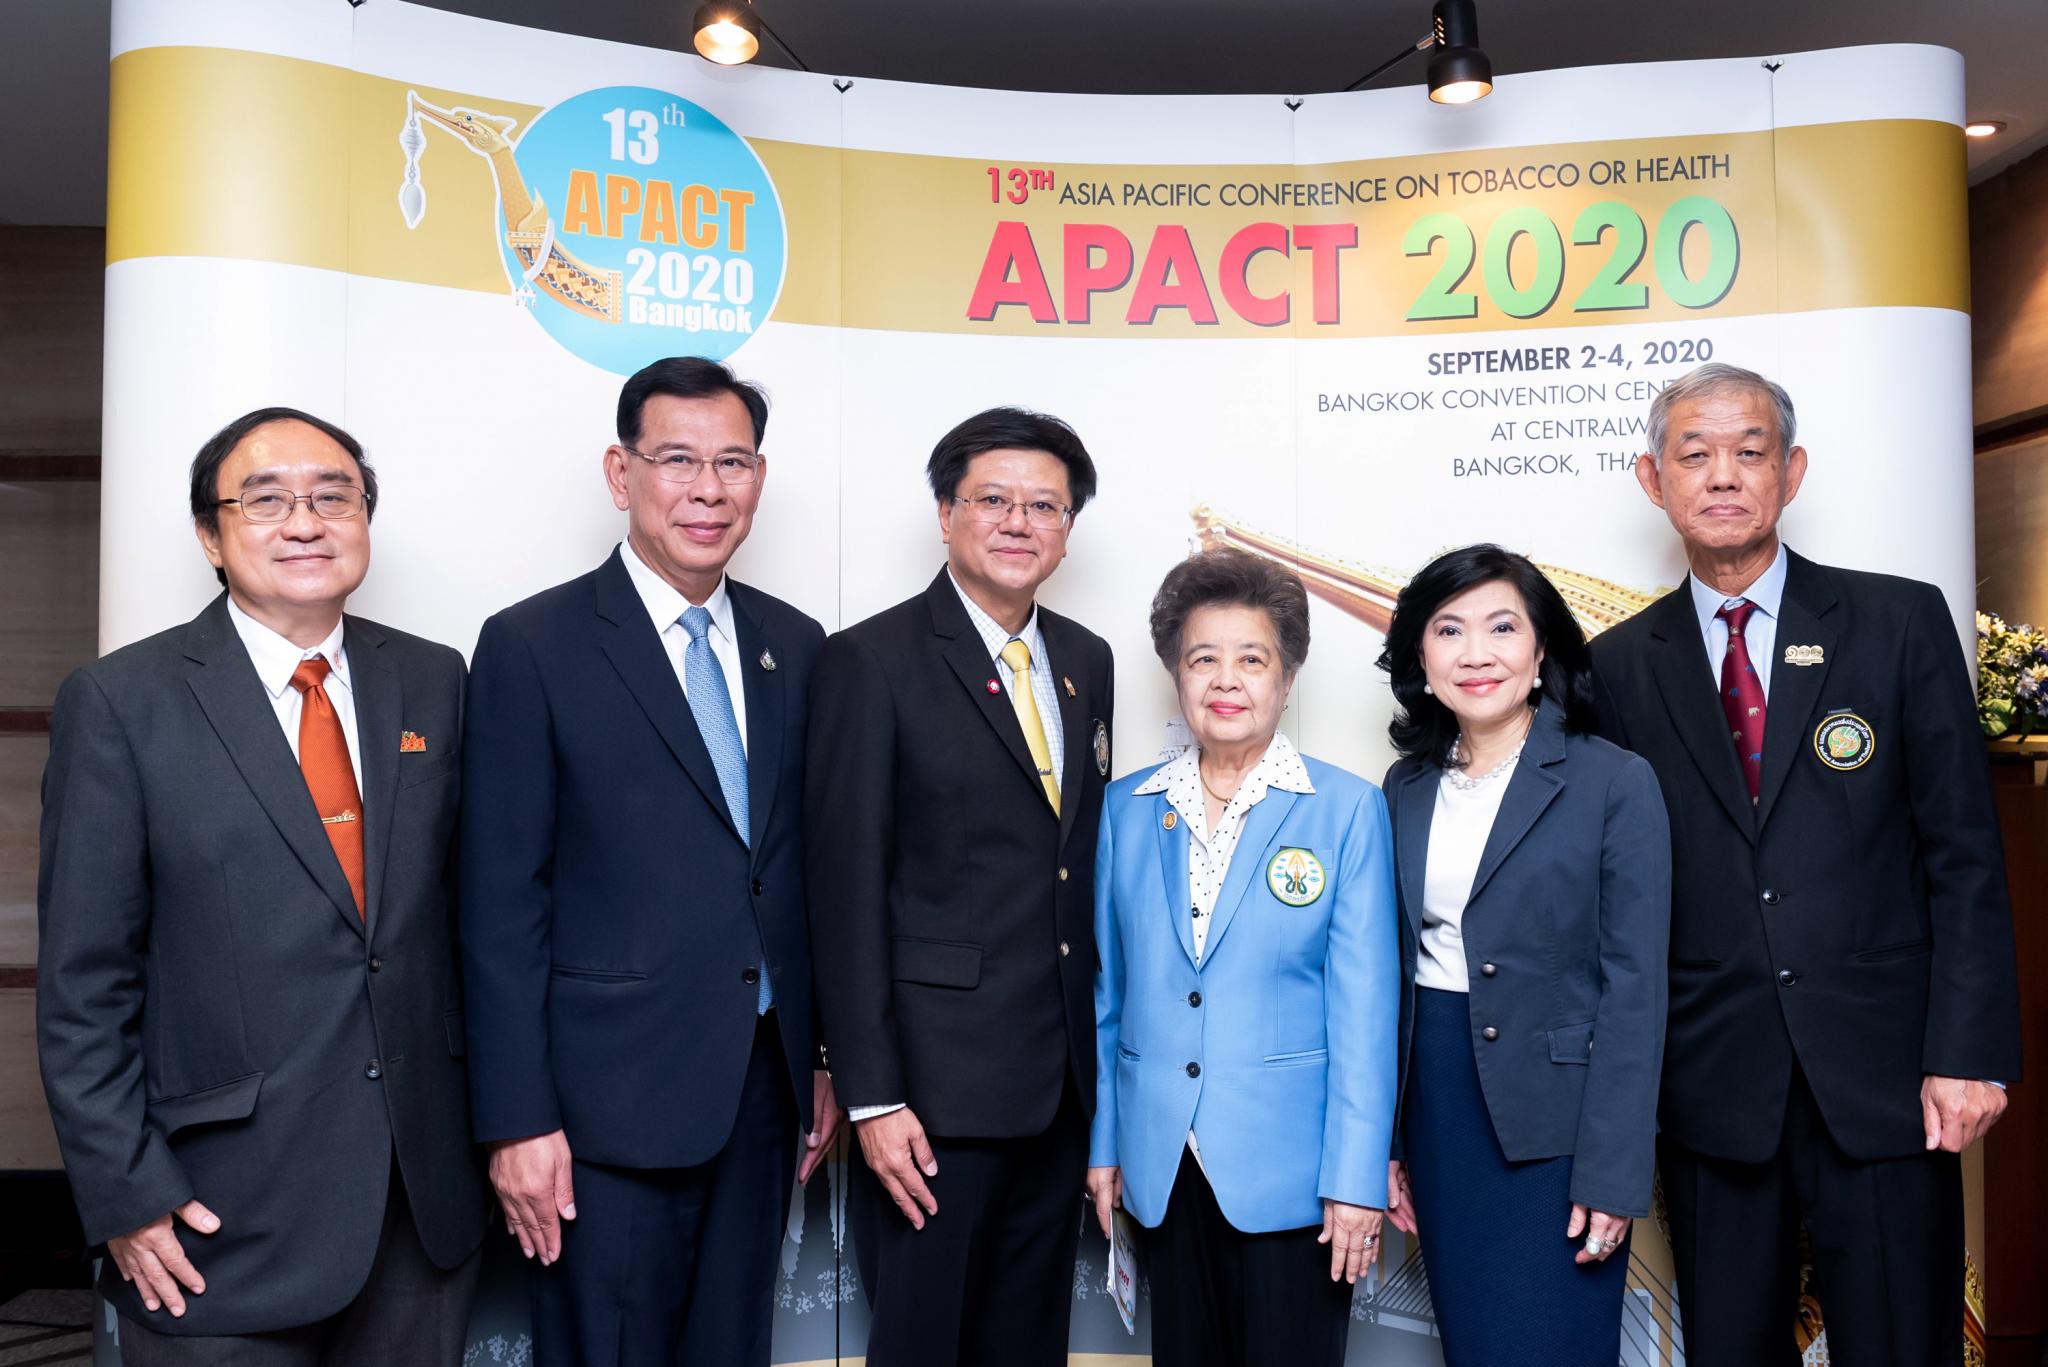 แพทยสมาคมฯ จัดพิธีลงนามความร่วมมือเป็นภาคีเครือข่ายจัดประชุม APACT 2020 สร้างสังคมปลอดบุหรี่